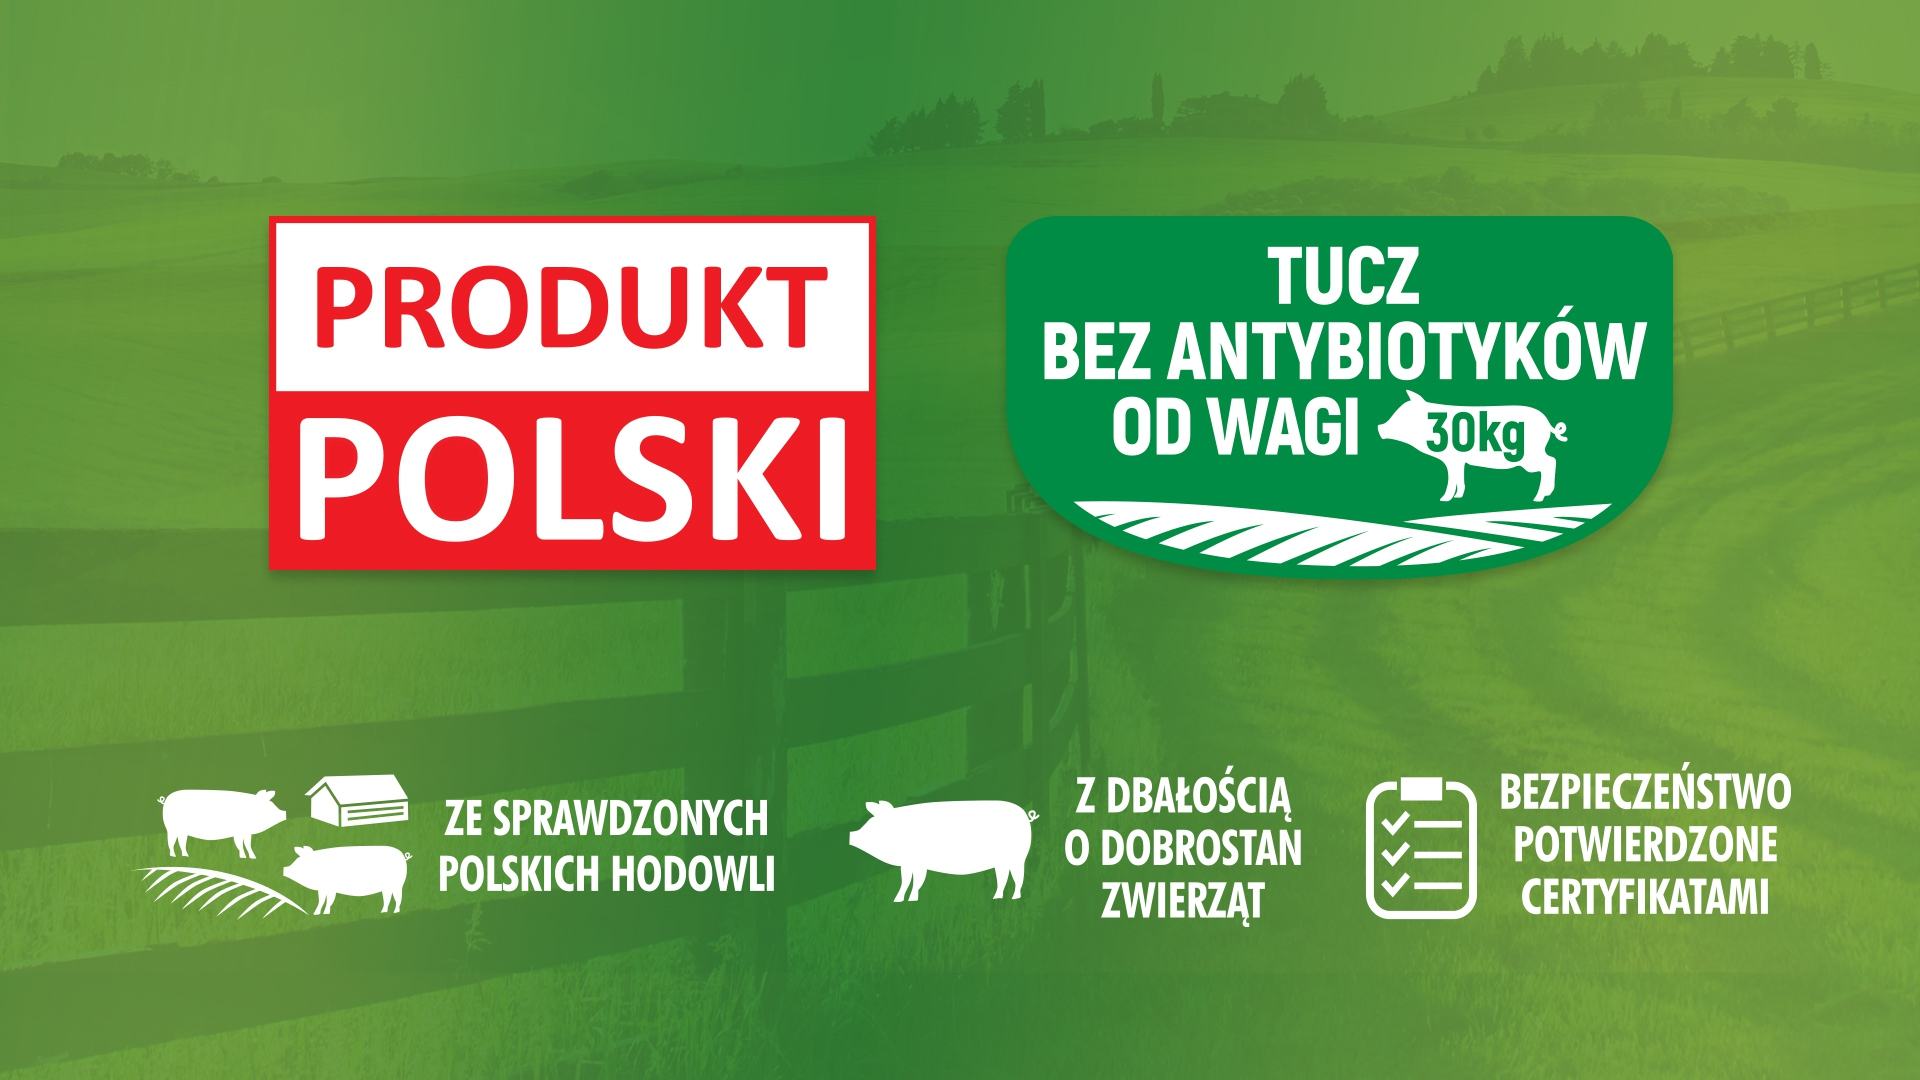 New products from Sokołów